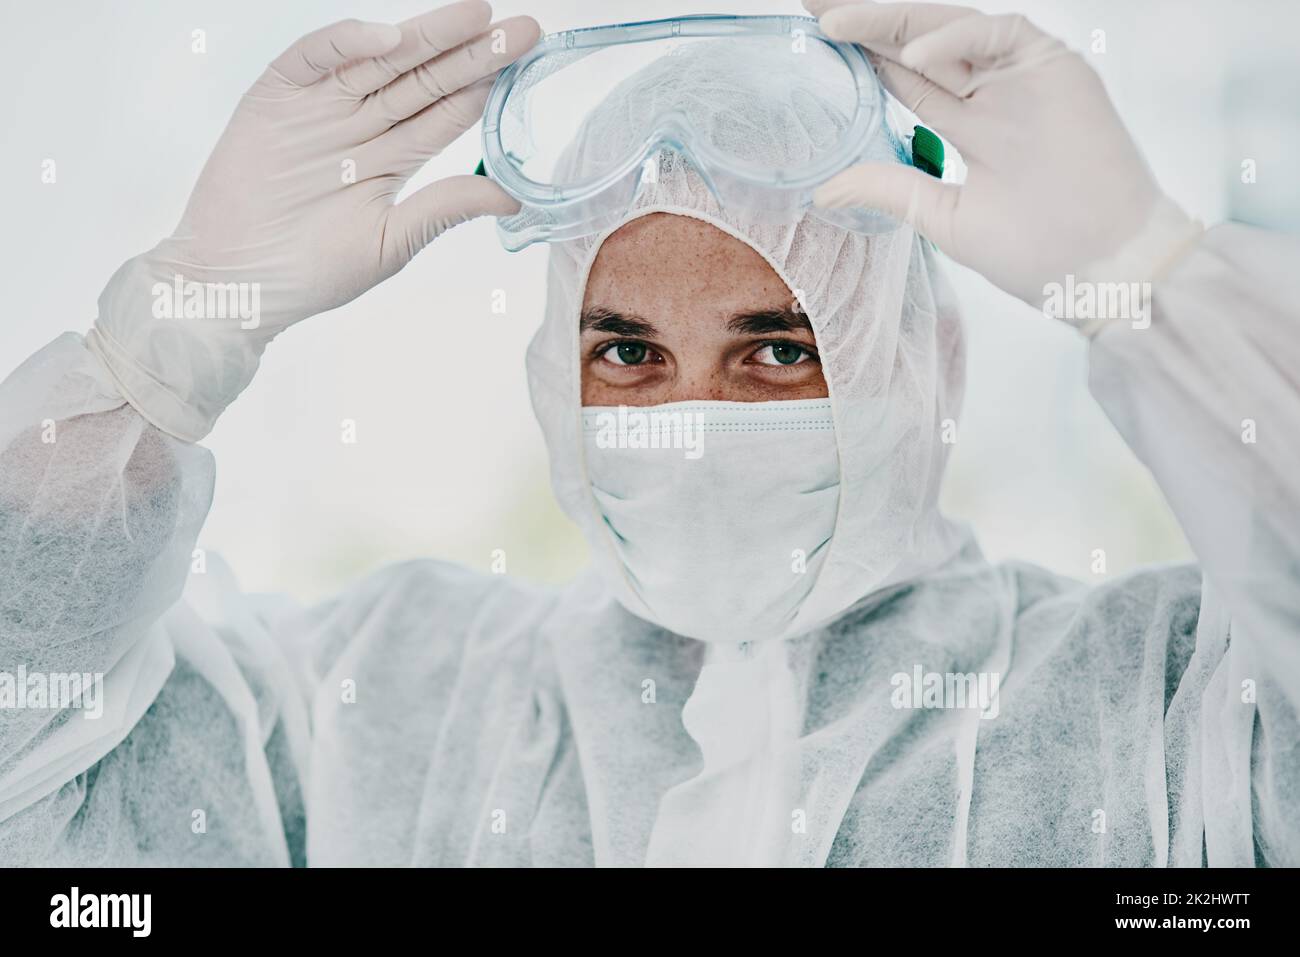 È tempo di annientare questo virus. Scatto di un giovane uomo che mette il suo equipaggiamento protettivo prima del processo di decontaminazione. Foto Stock